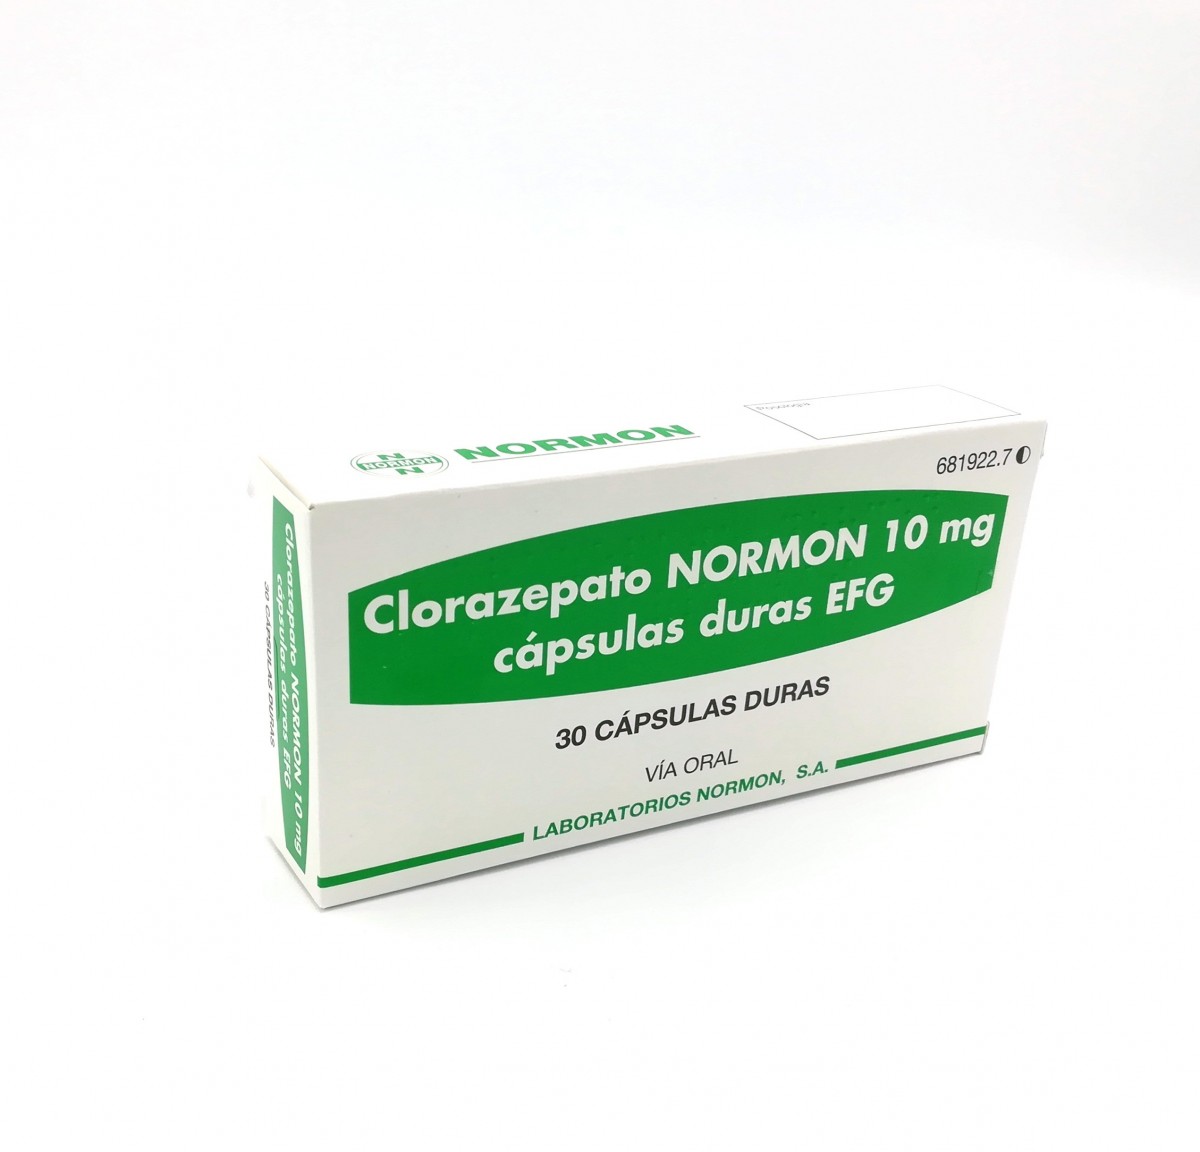 CLORAZEPATO NORMON  10 mg CAPSULAS DURAS EFG, 30 cápsulas fotografía del envase.